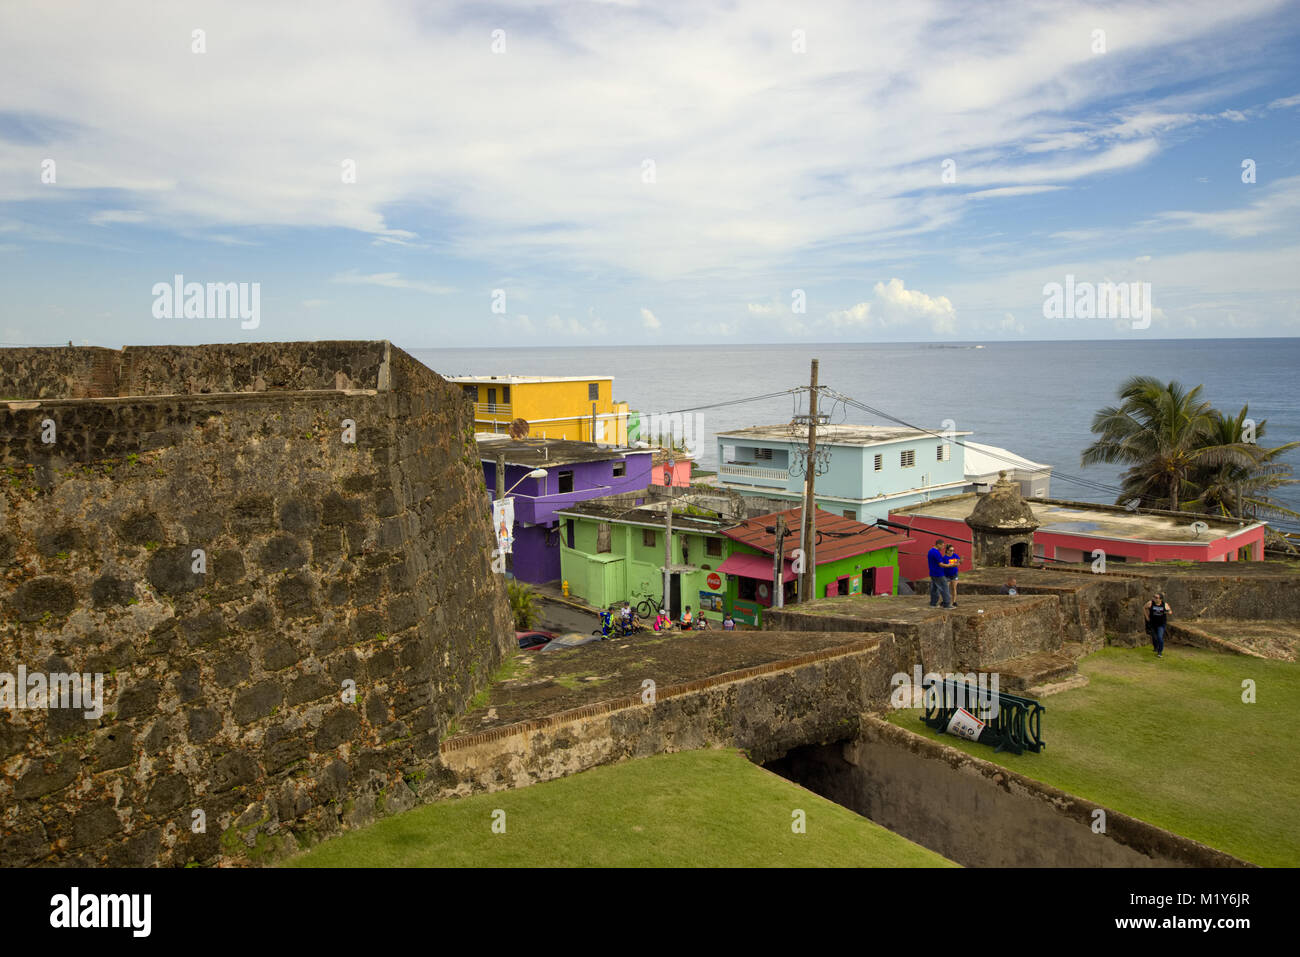 La Perla Old San Juan, Puerto Rico Stock Photo - Alamy